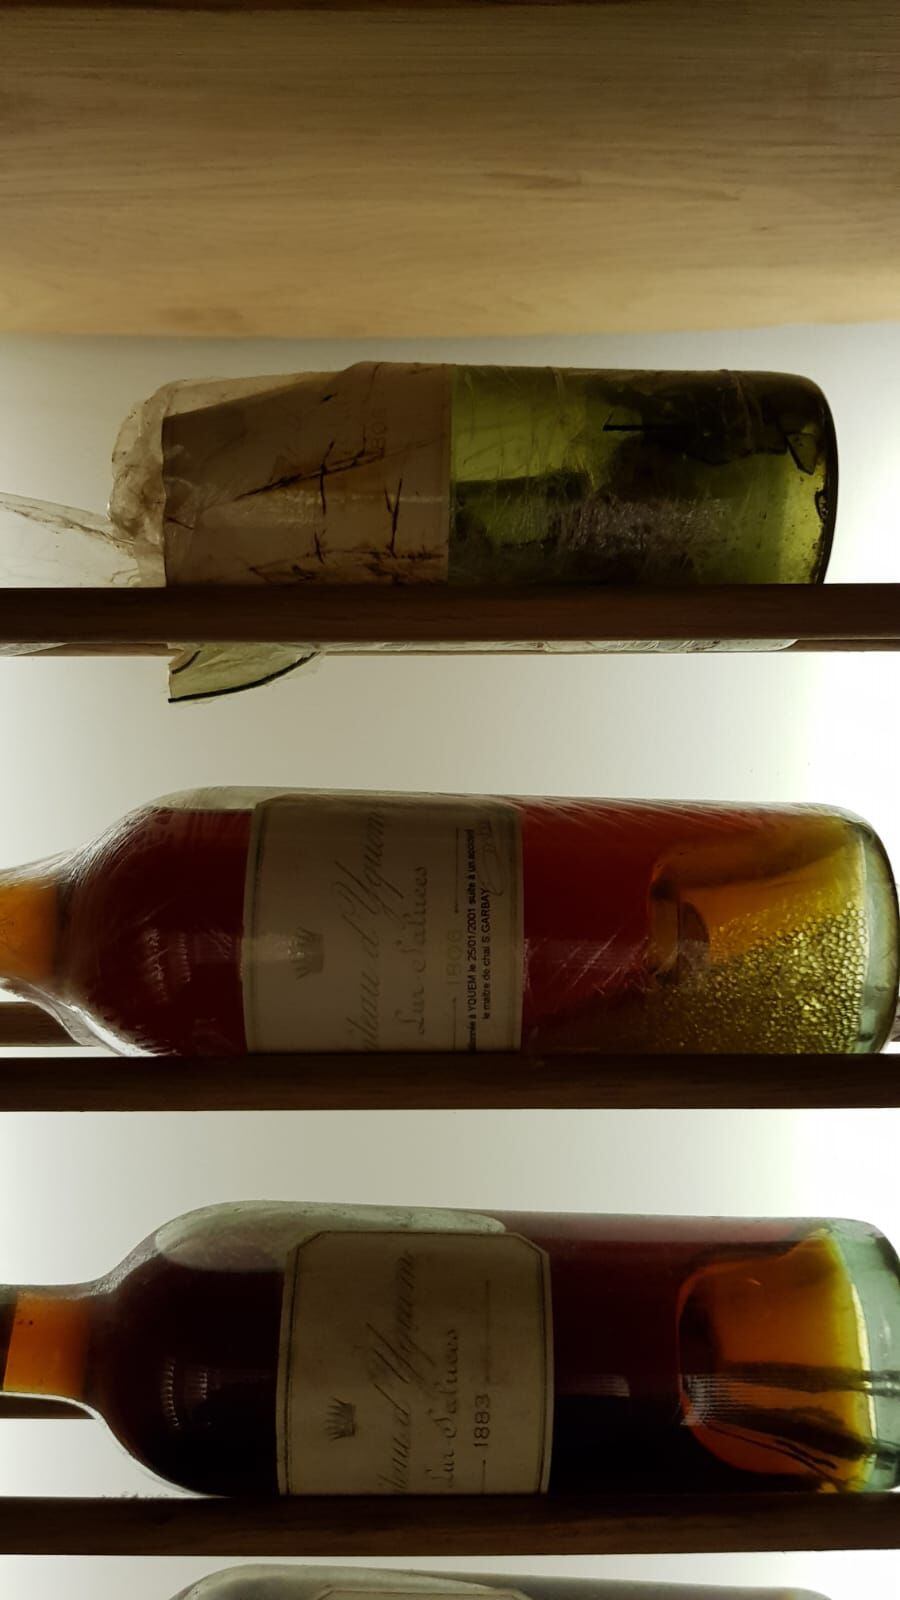 Arriba del todo, la botella original de Chateau d’Yquem de 1806, rota tras un incidente en su almacenaje en 2001. En medio, la botella que contienen el contenido que se recuperó tras el incidente. 